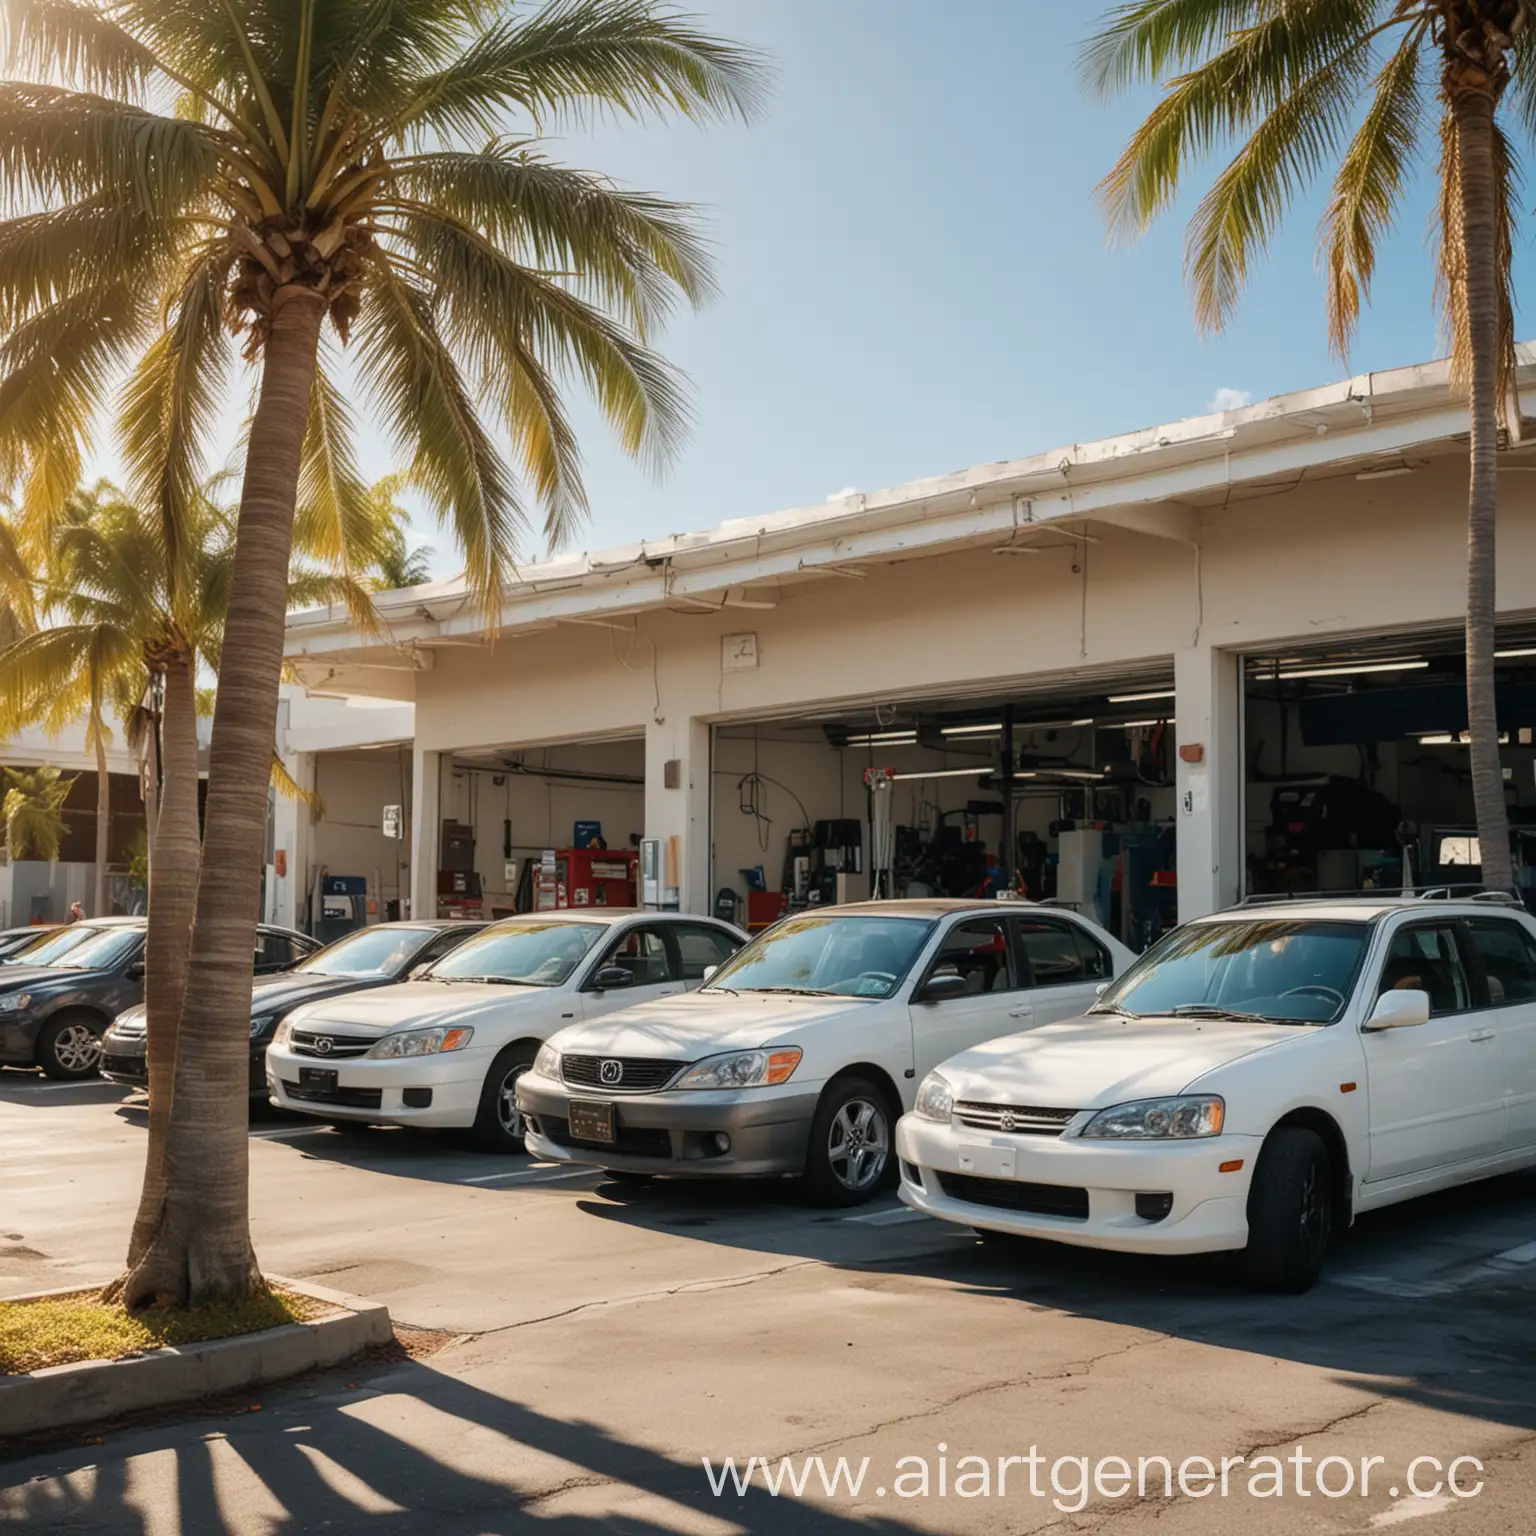 Автосервис в Майами, автосервис, сто, станция технического обслуживания, улица, пальмы, солнечный день, японские автомобили, сервис японских автомобилей, вид с улицы